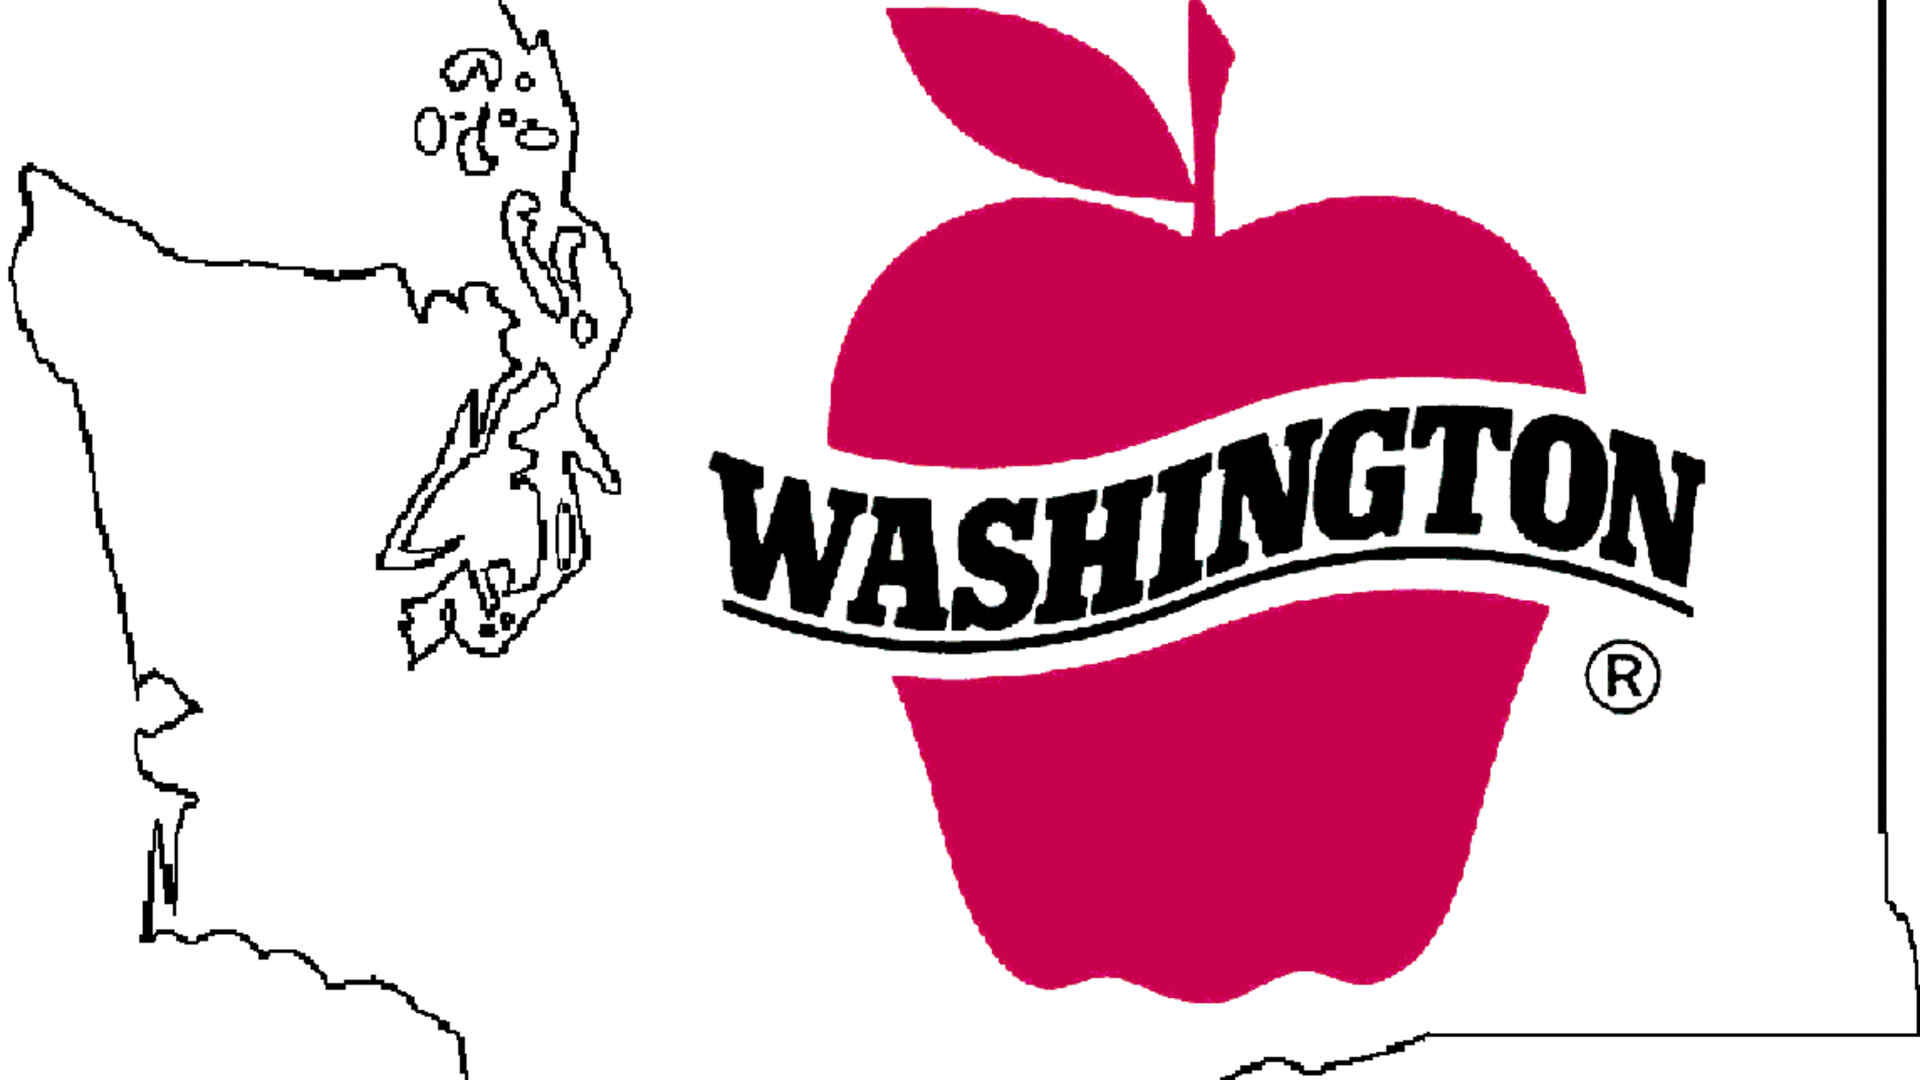 Washington Apples in Pandemic Pt 1